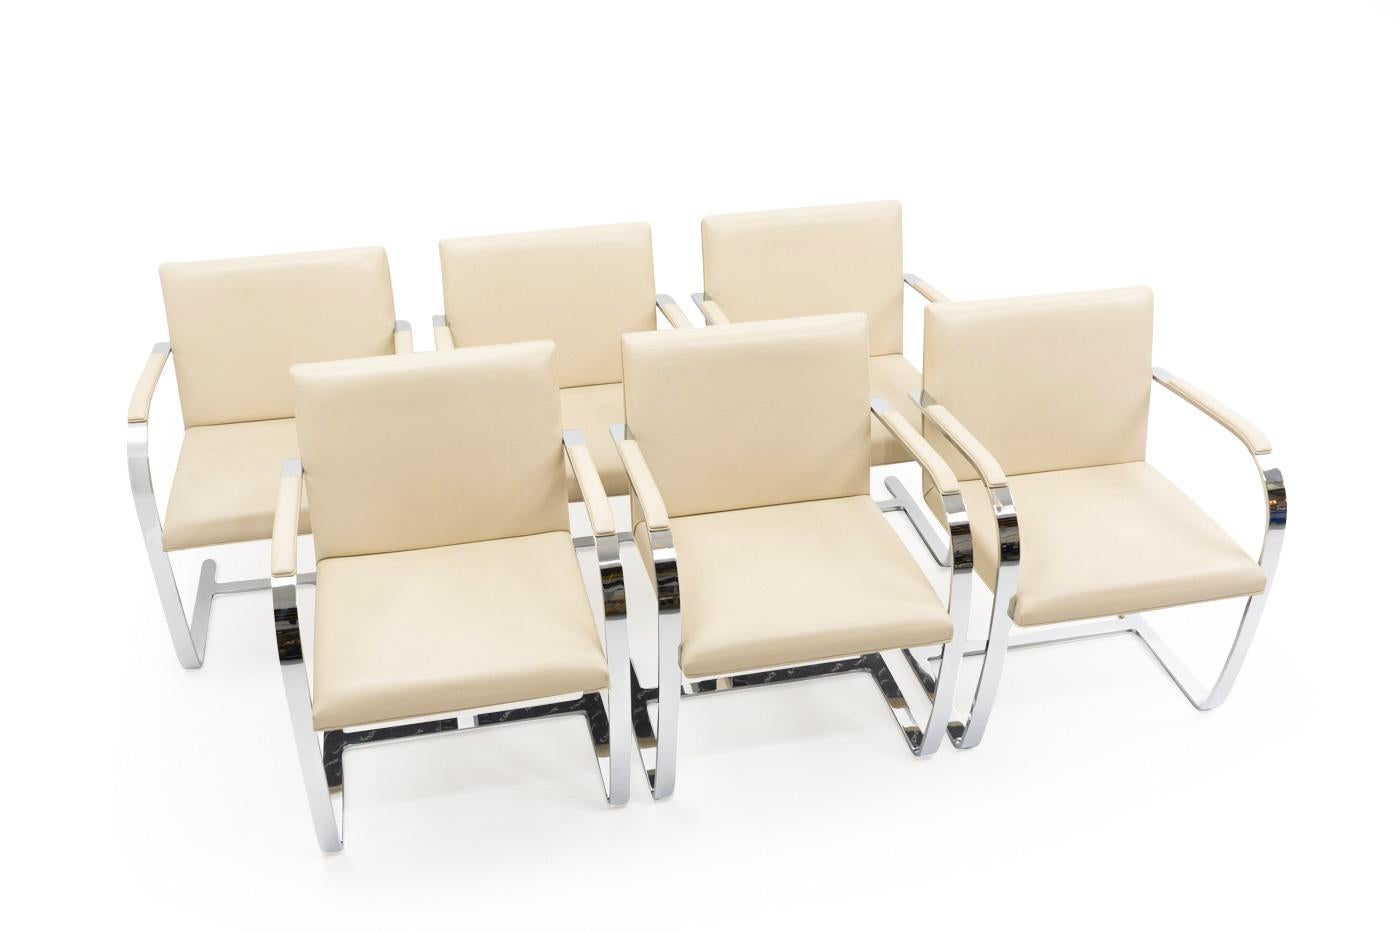 Satz von sechs BRNO-Stühlen von Ludwig Mies van der Rohe, hergestellt von Knoll in den 1990er Jahren.

Diese Freischwinger wurden ursprünglich in den 1930er Jahren für das Esszimmer der Villa Tugendhat in BRNO (Tschechische Republik) entworfen.